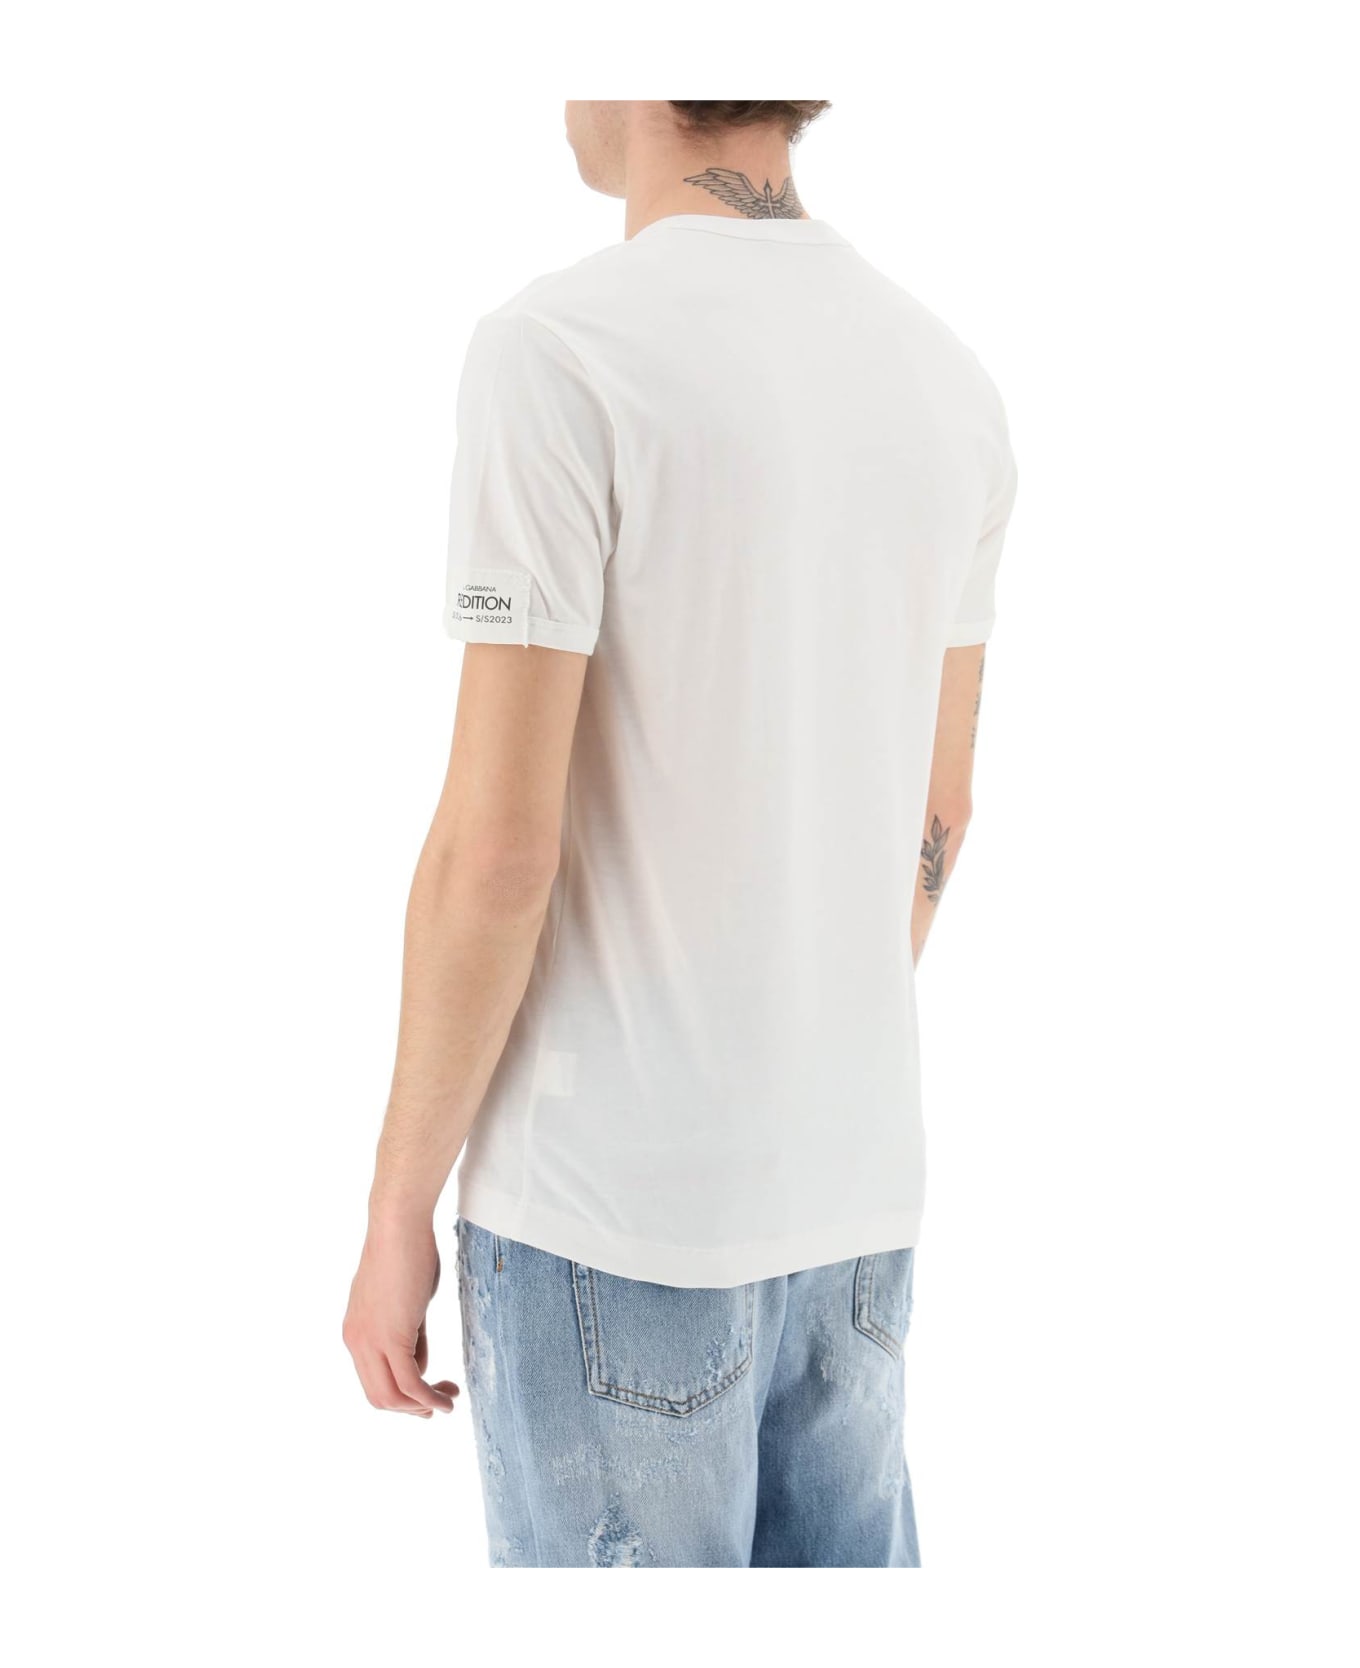 Dolce & Gabbana Portofino Print Re-edition T-shirt - VARIANTE ABBINATA (White) シャツ